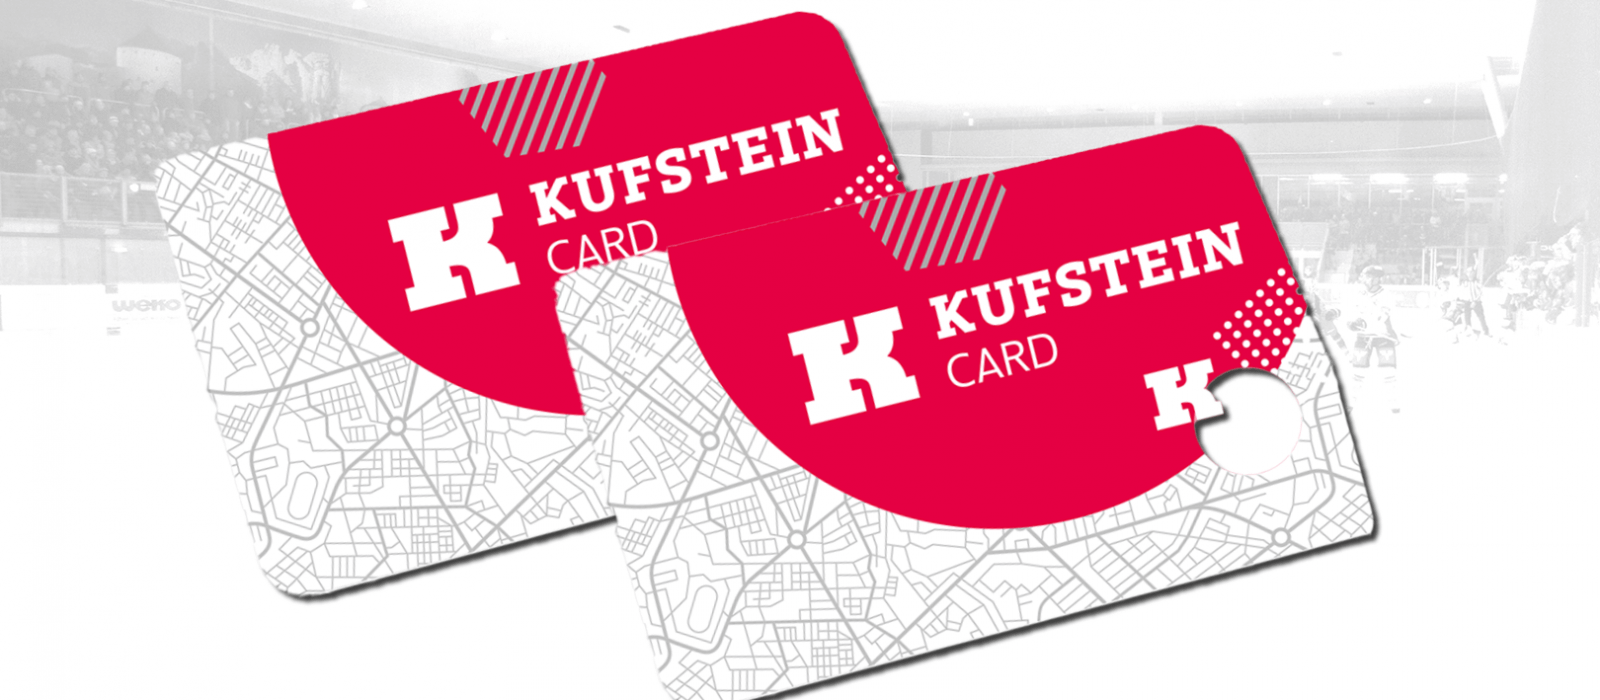 HC Kufstein - Kufstein Card